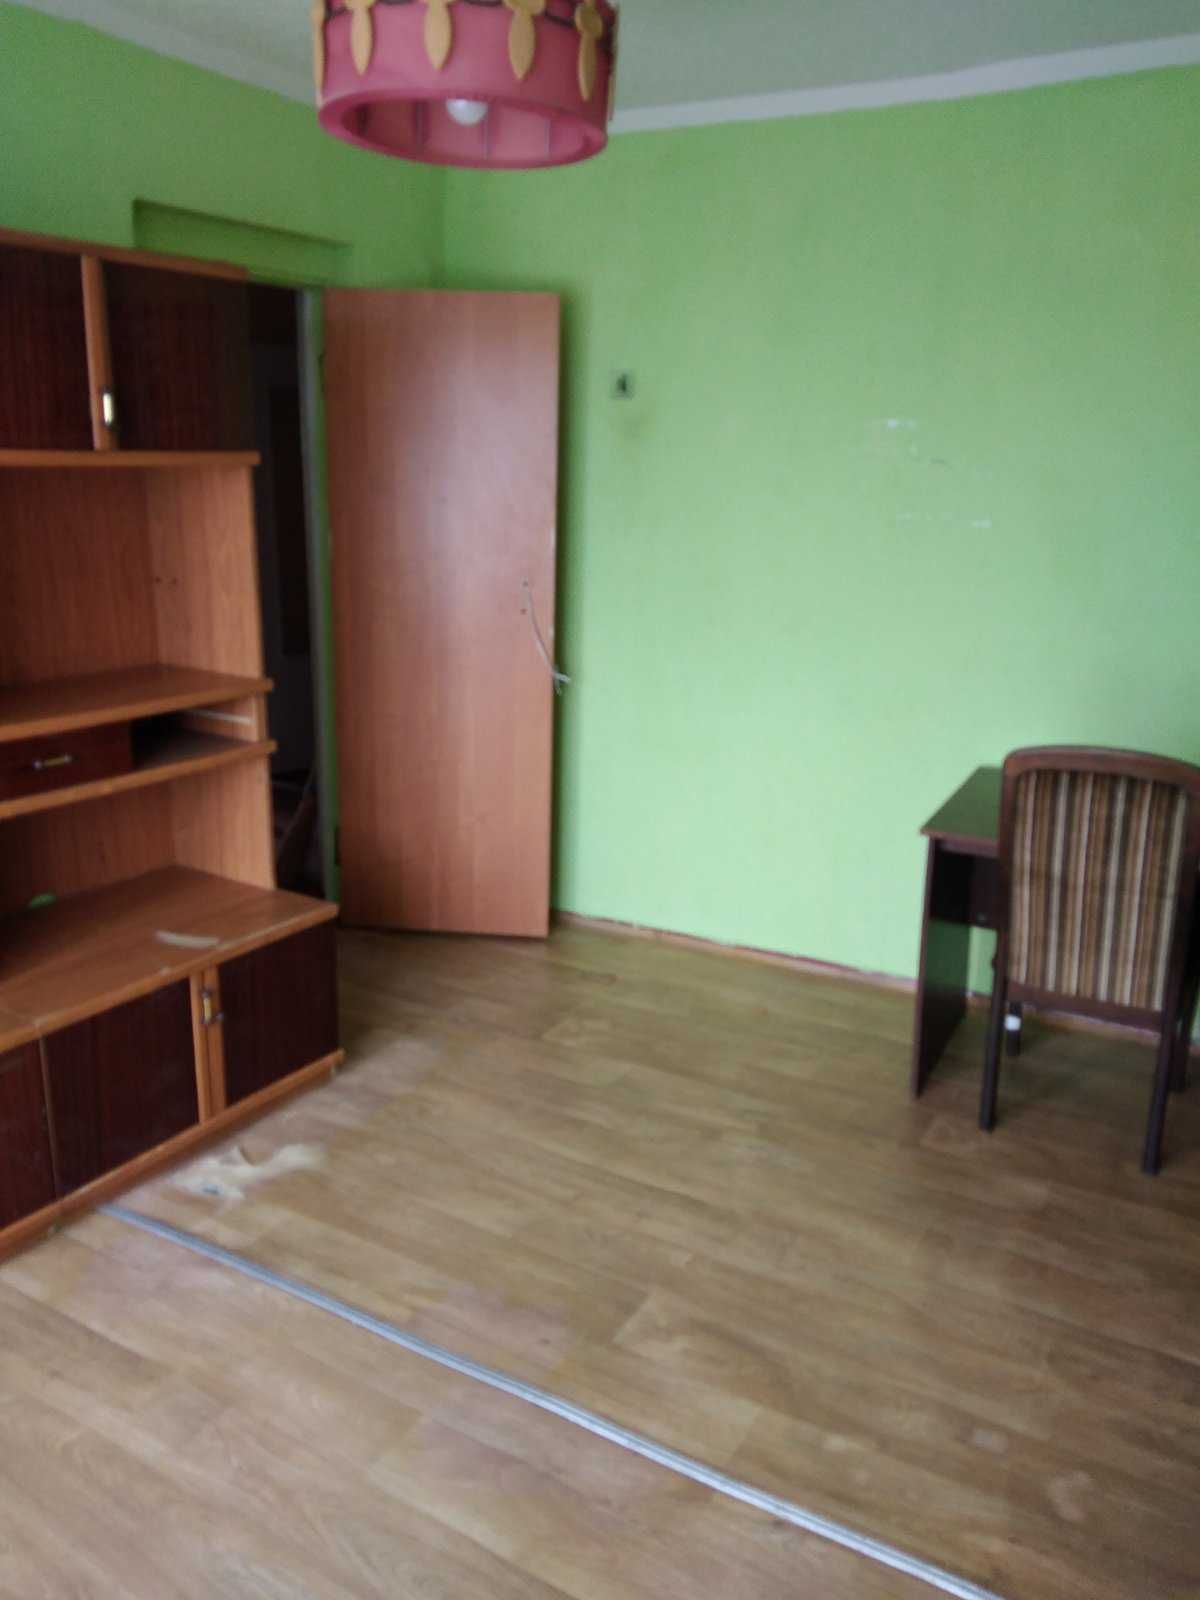 Хозяин. 3-хкомнатная квартиру в Покровске Донецкой области